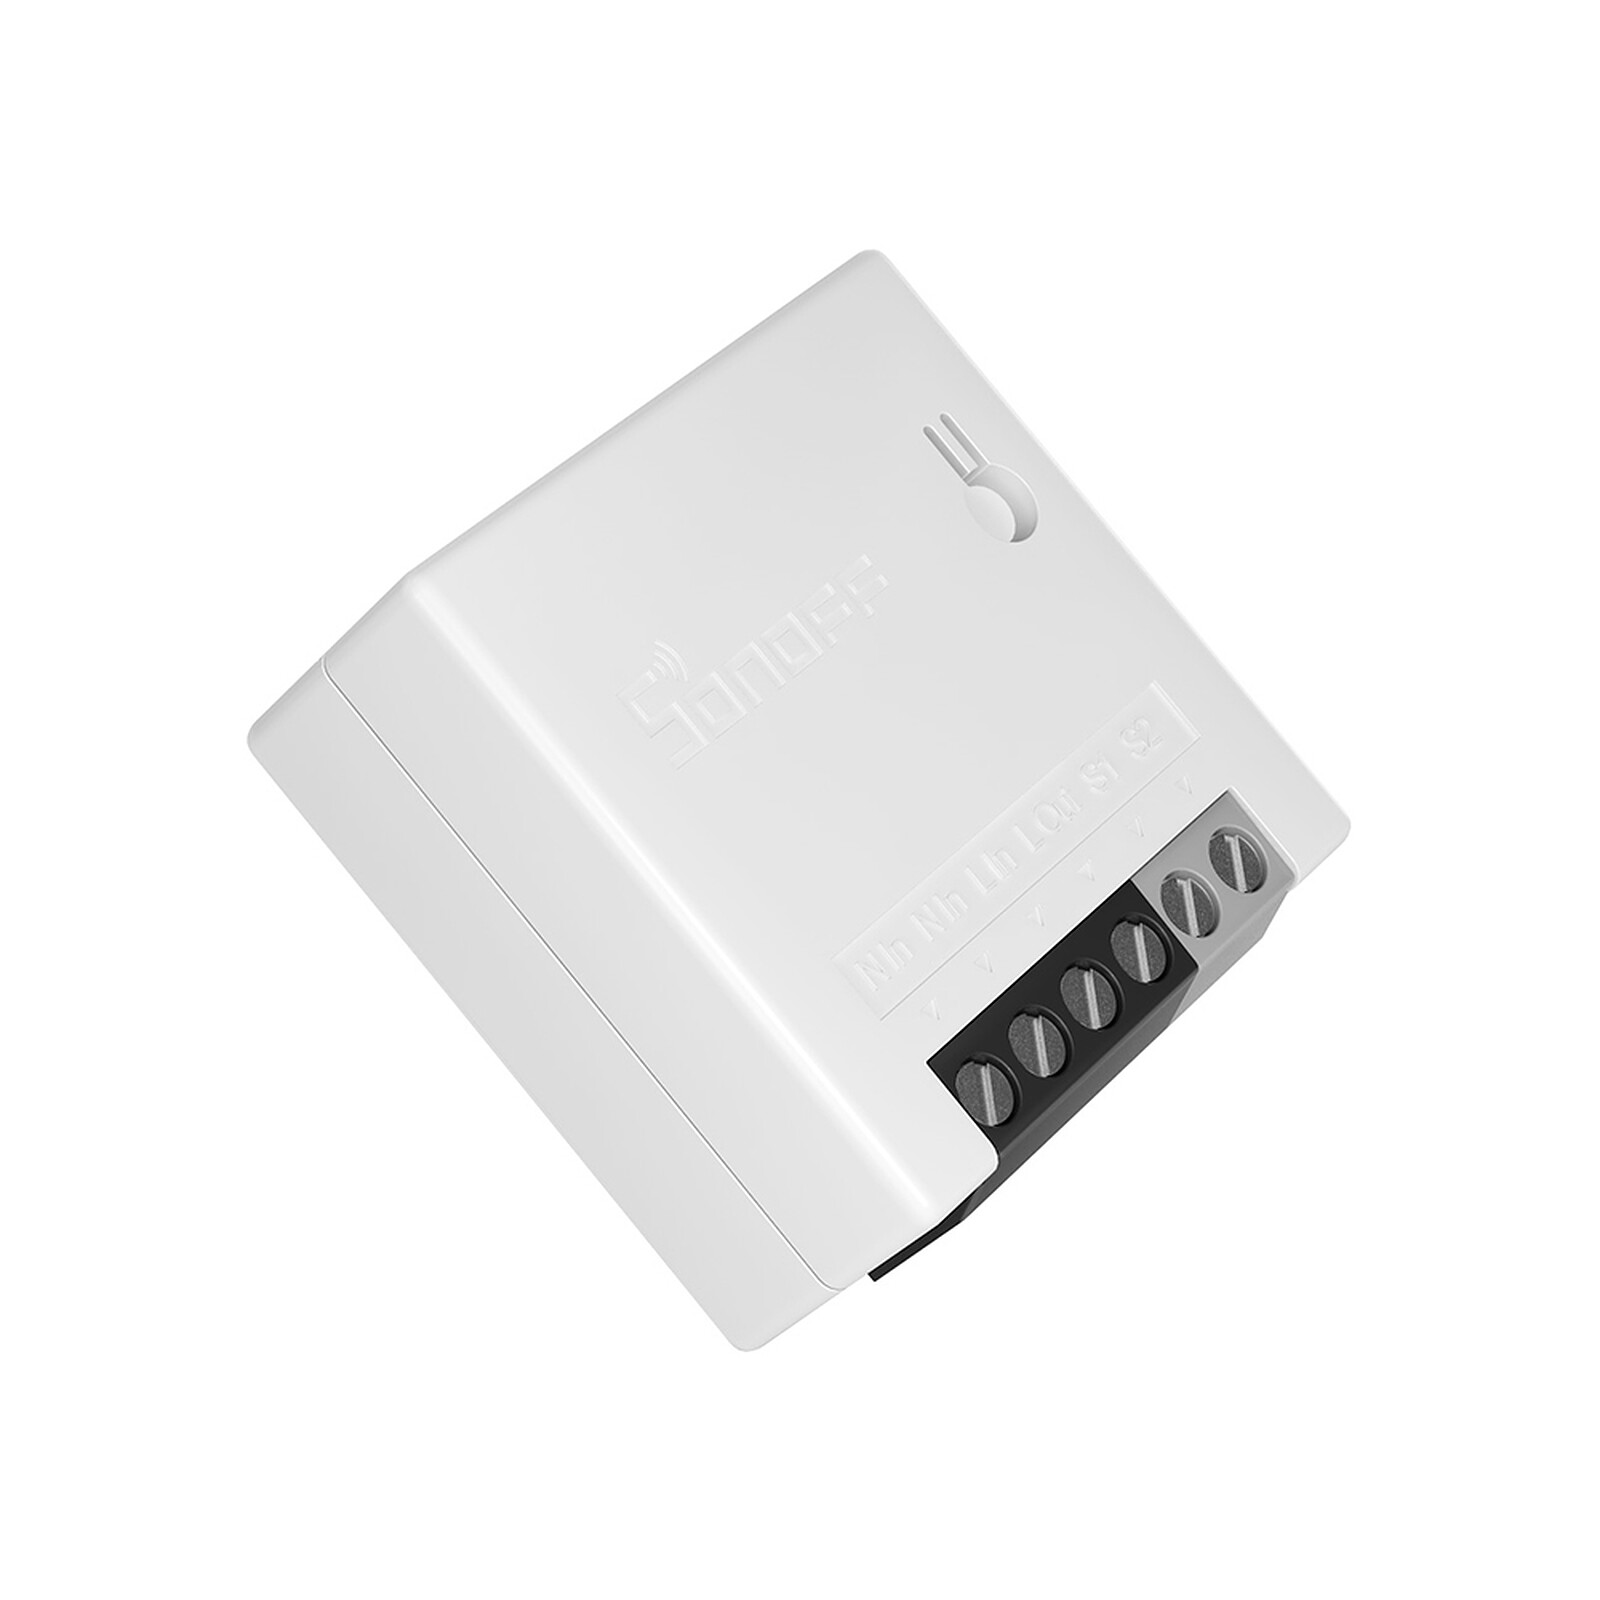 Interrupteur Connecté WiFi SONOFF Basic R2 Commutateur Intelligent